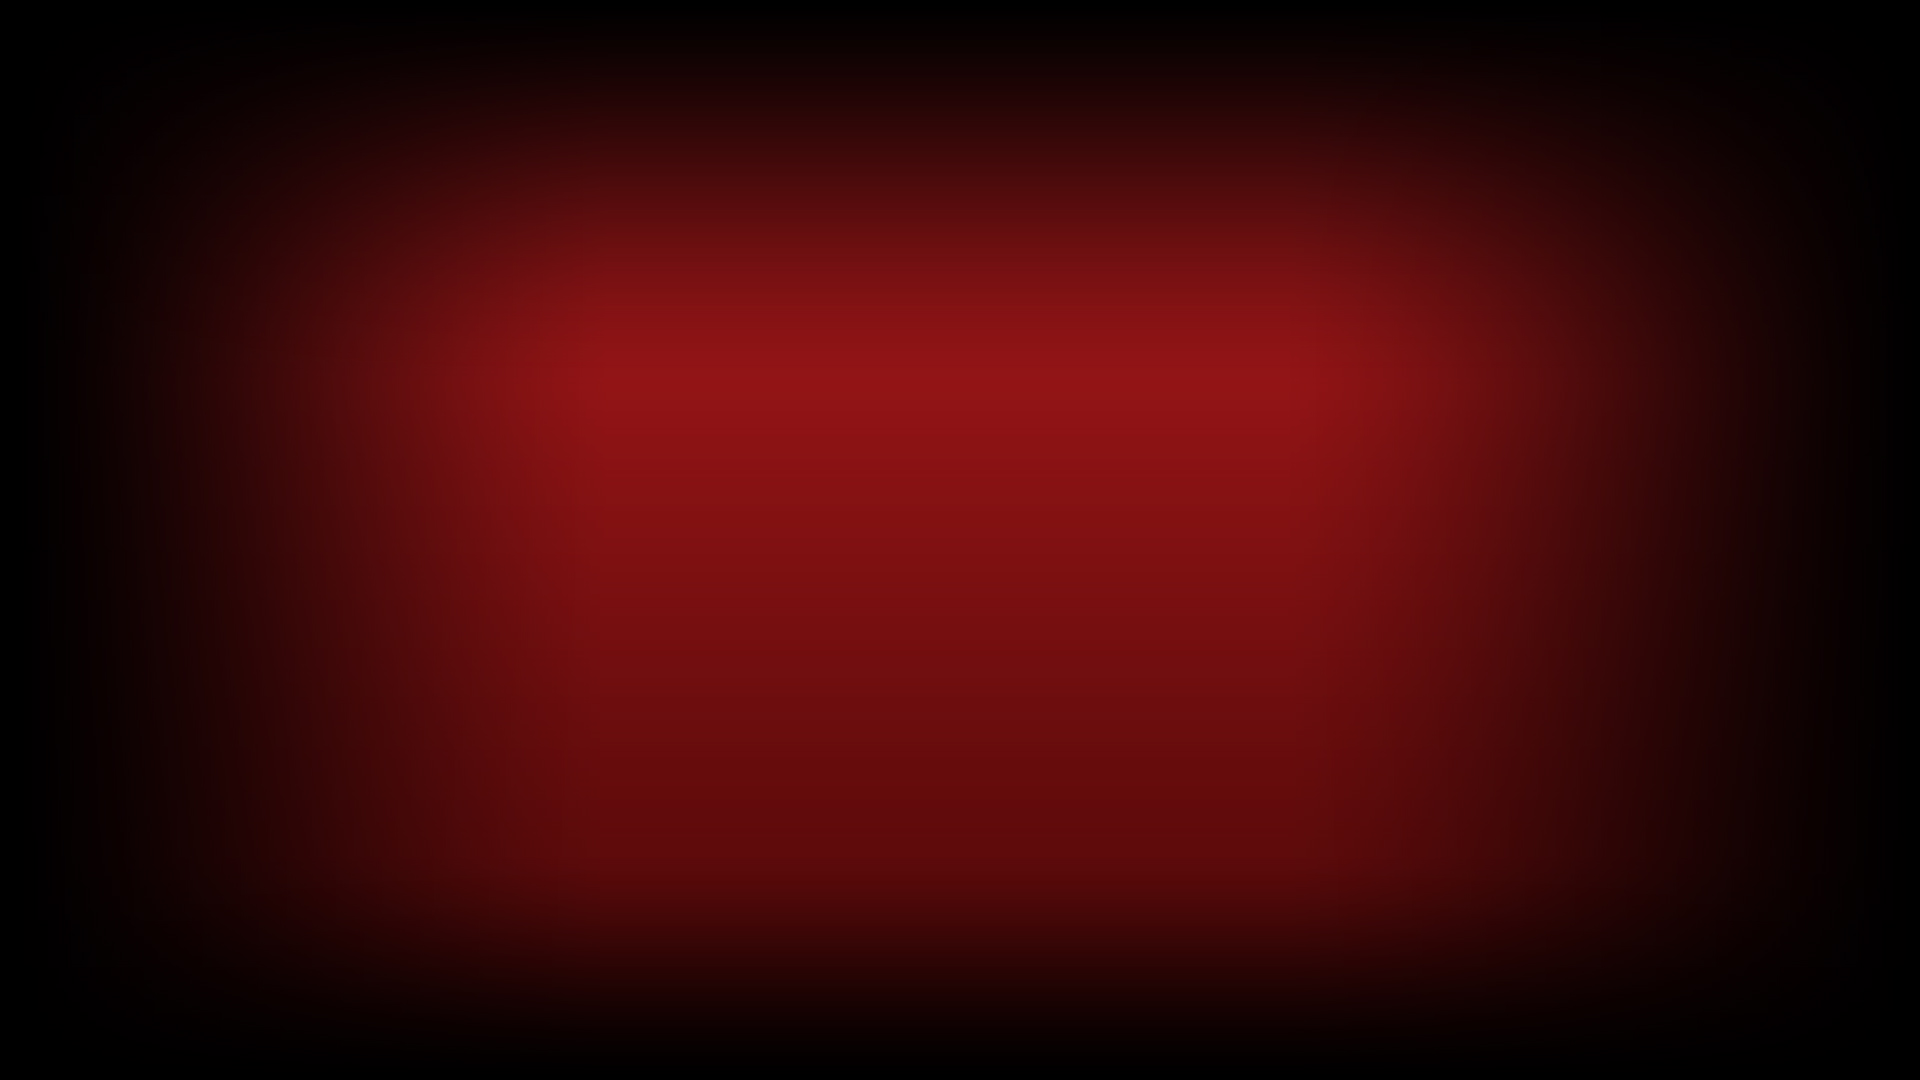 Thị trường cộng đồng Steam đang chào đón danh sách cho game Red Dawn, với hình nền hơi đỏ đầy ấn tượng. Khám phá ngay và khai thác sức mạnh của hình nền qua liên kết ảnh này.